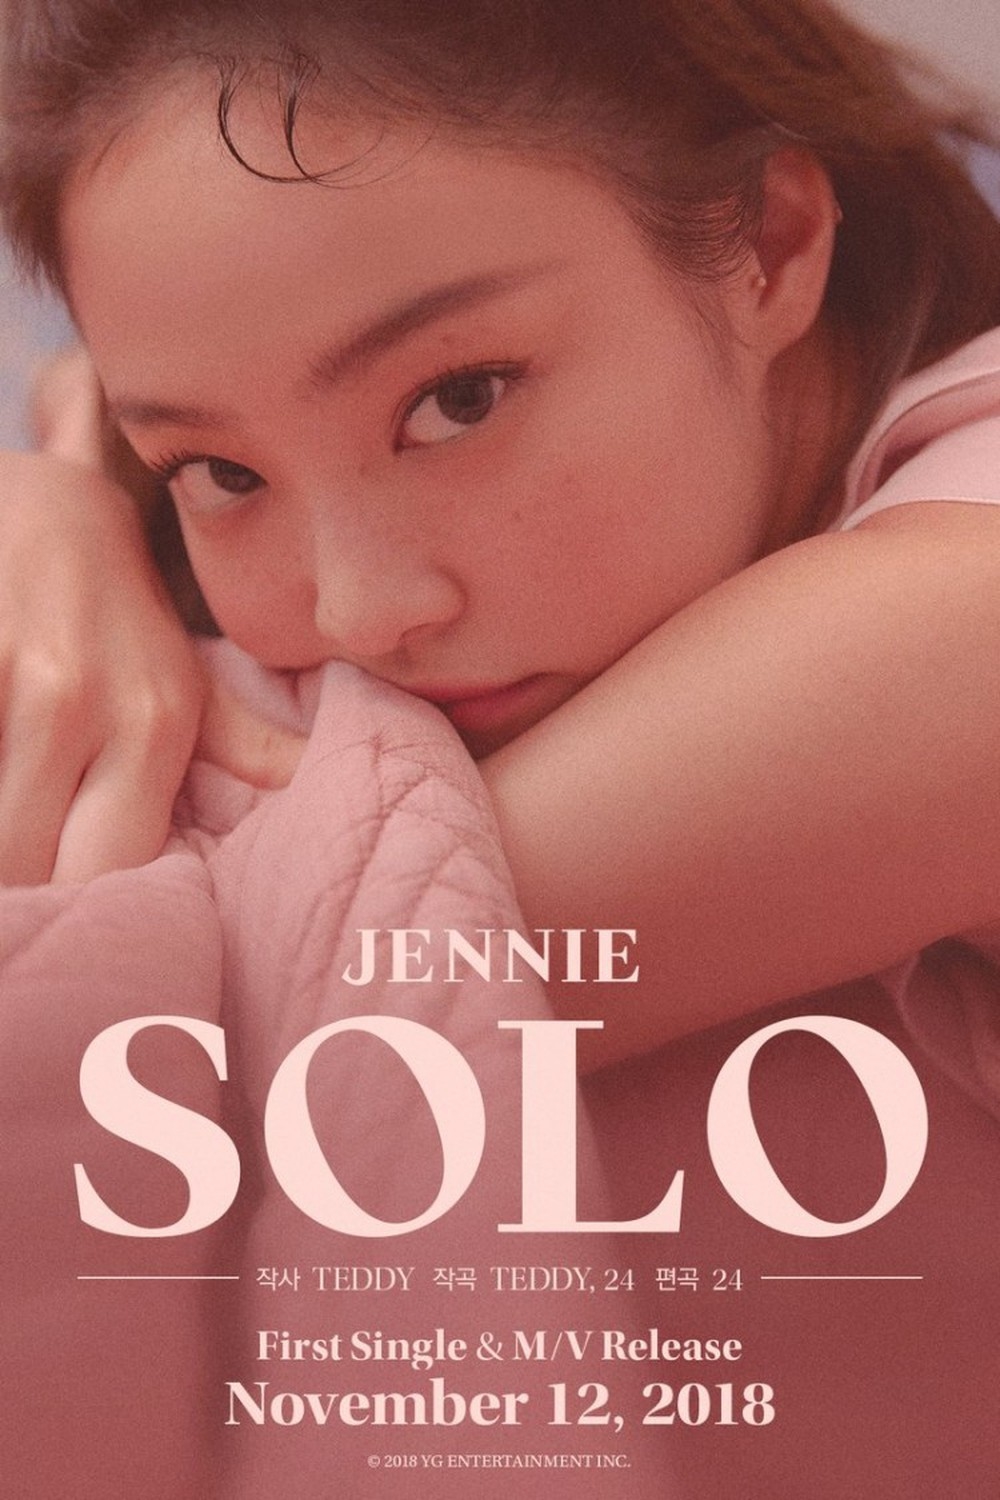 
Trong khi đó, Jennie lại tách ra solo khá sớm.